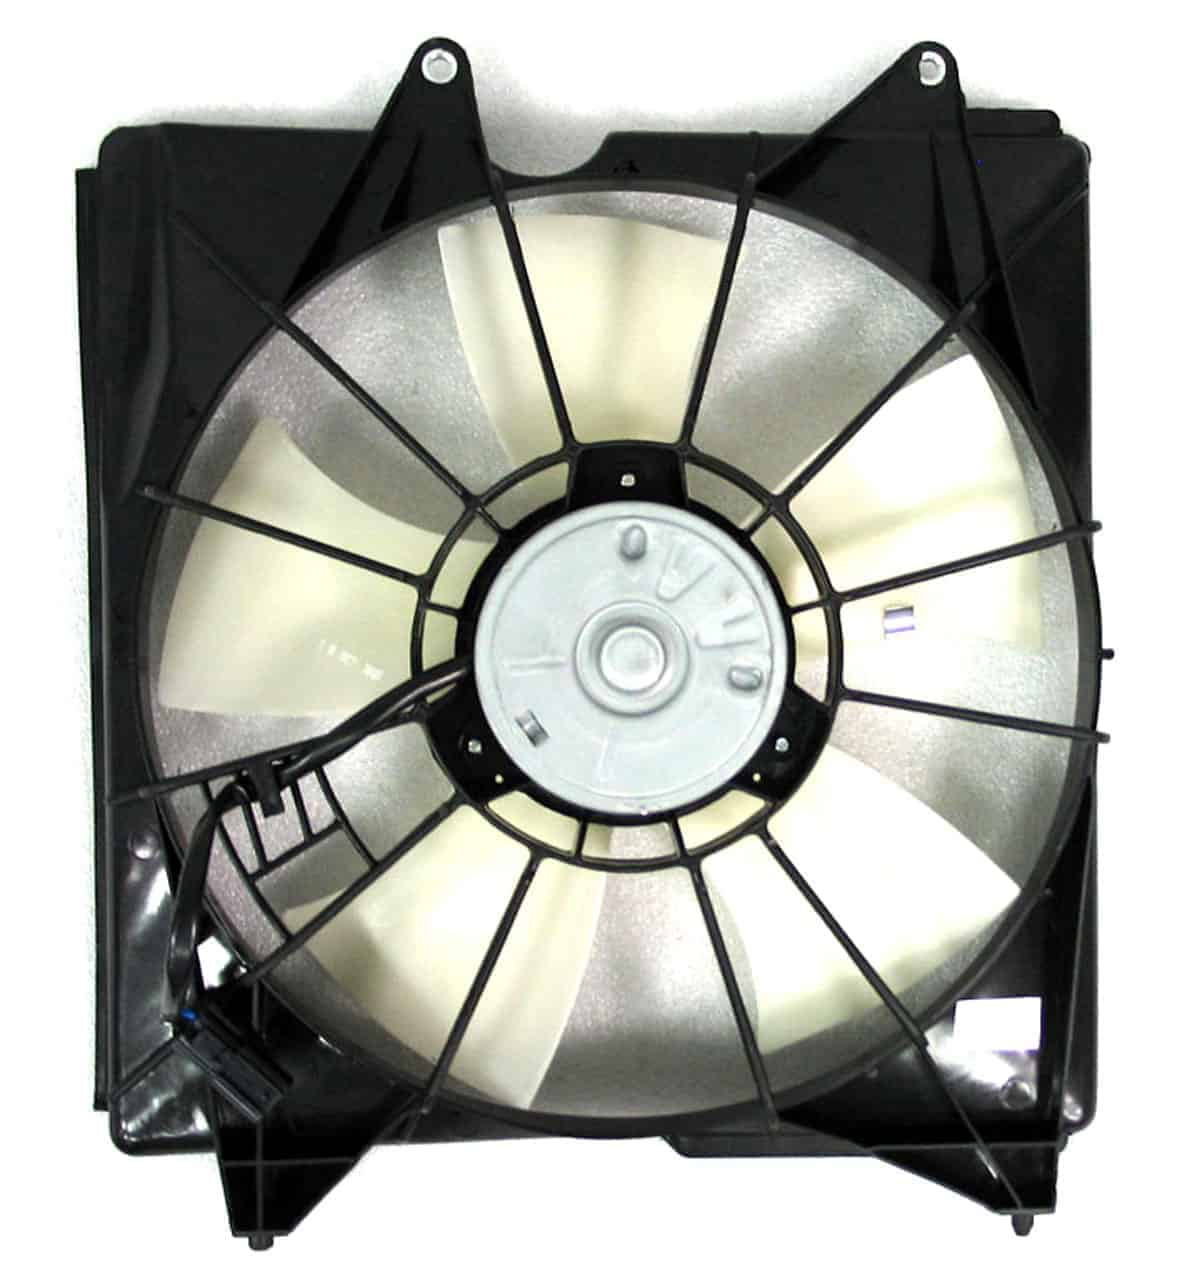 NI3115107 Cooling System Fan Radiator